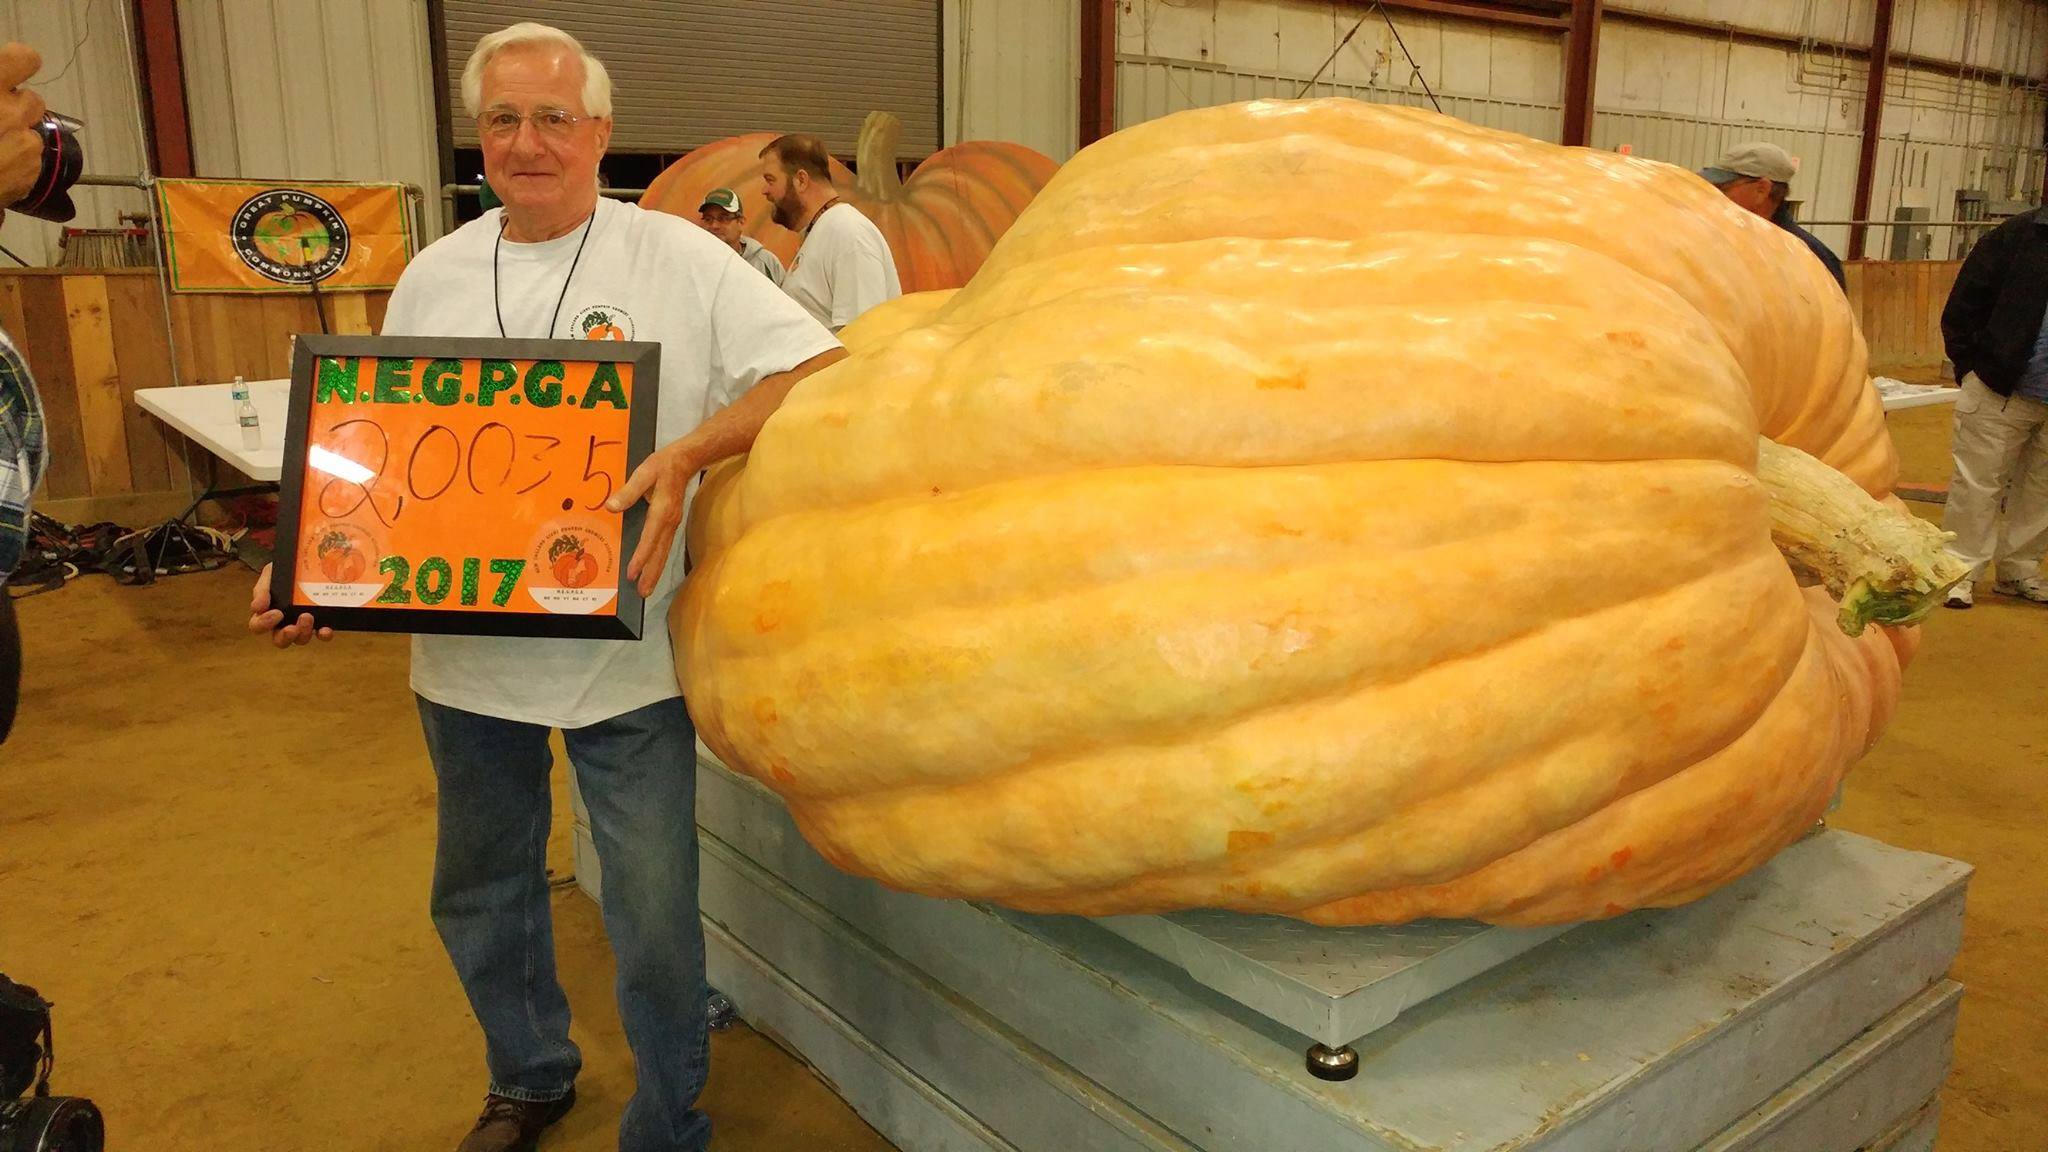 2003.5 lb Pumpkin